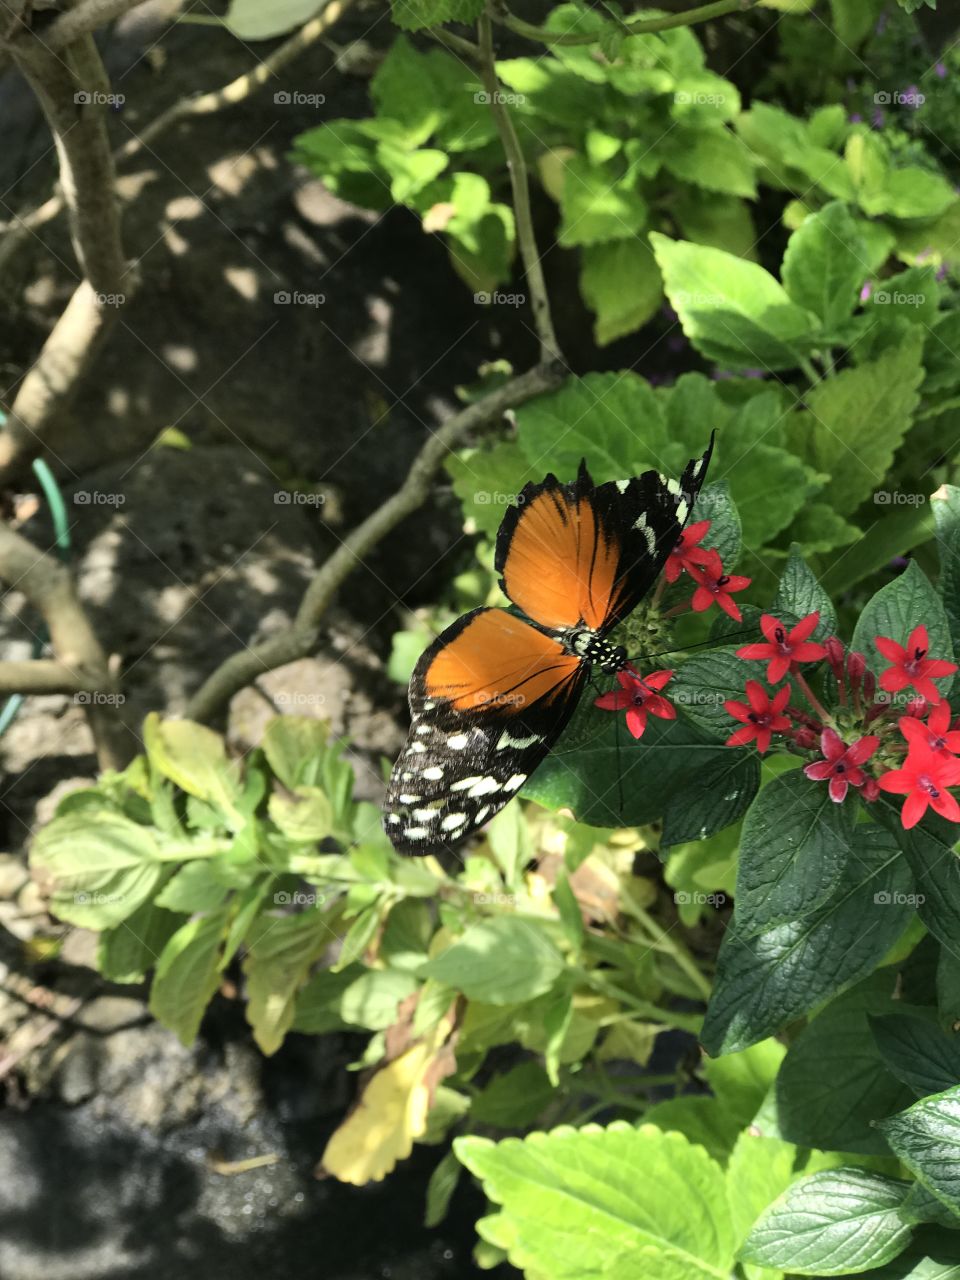 Butterfly on green garden leaf